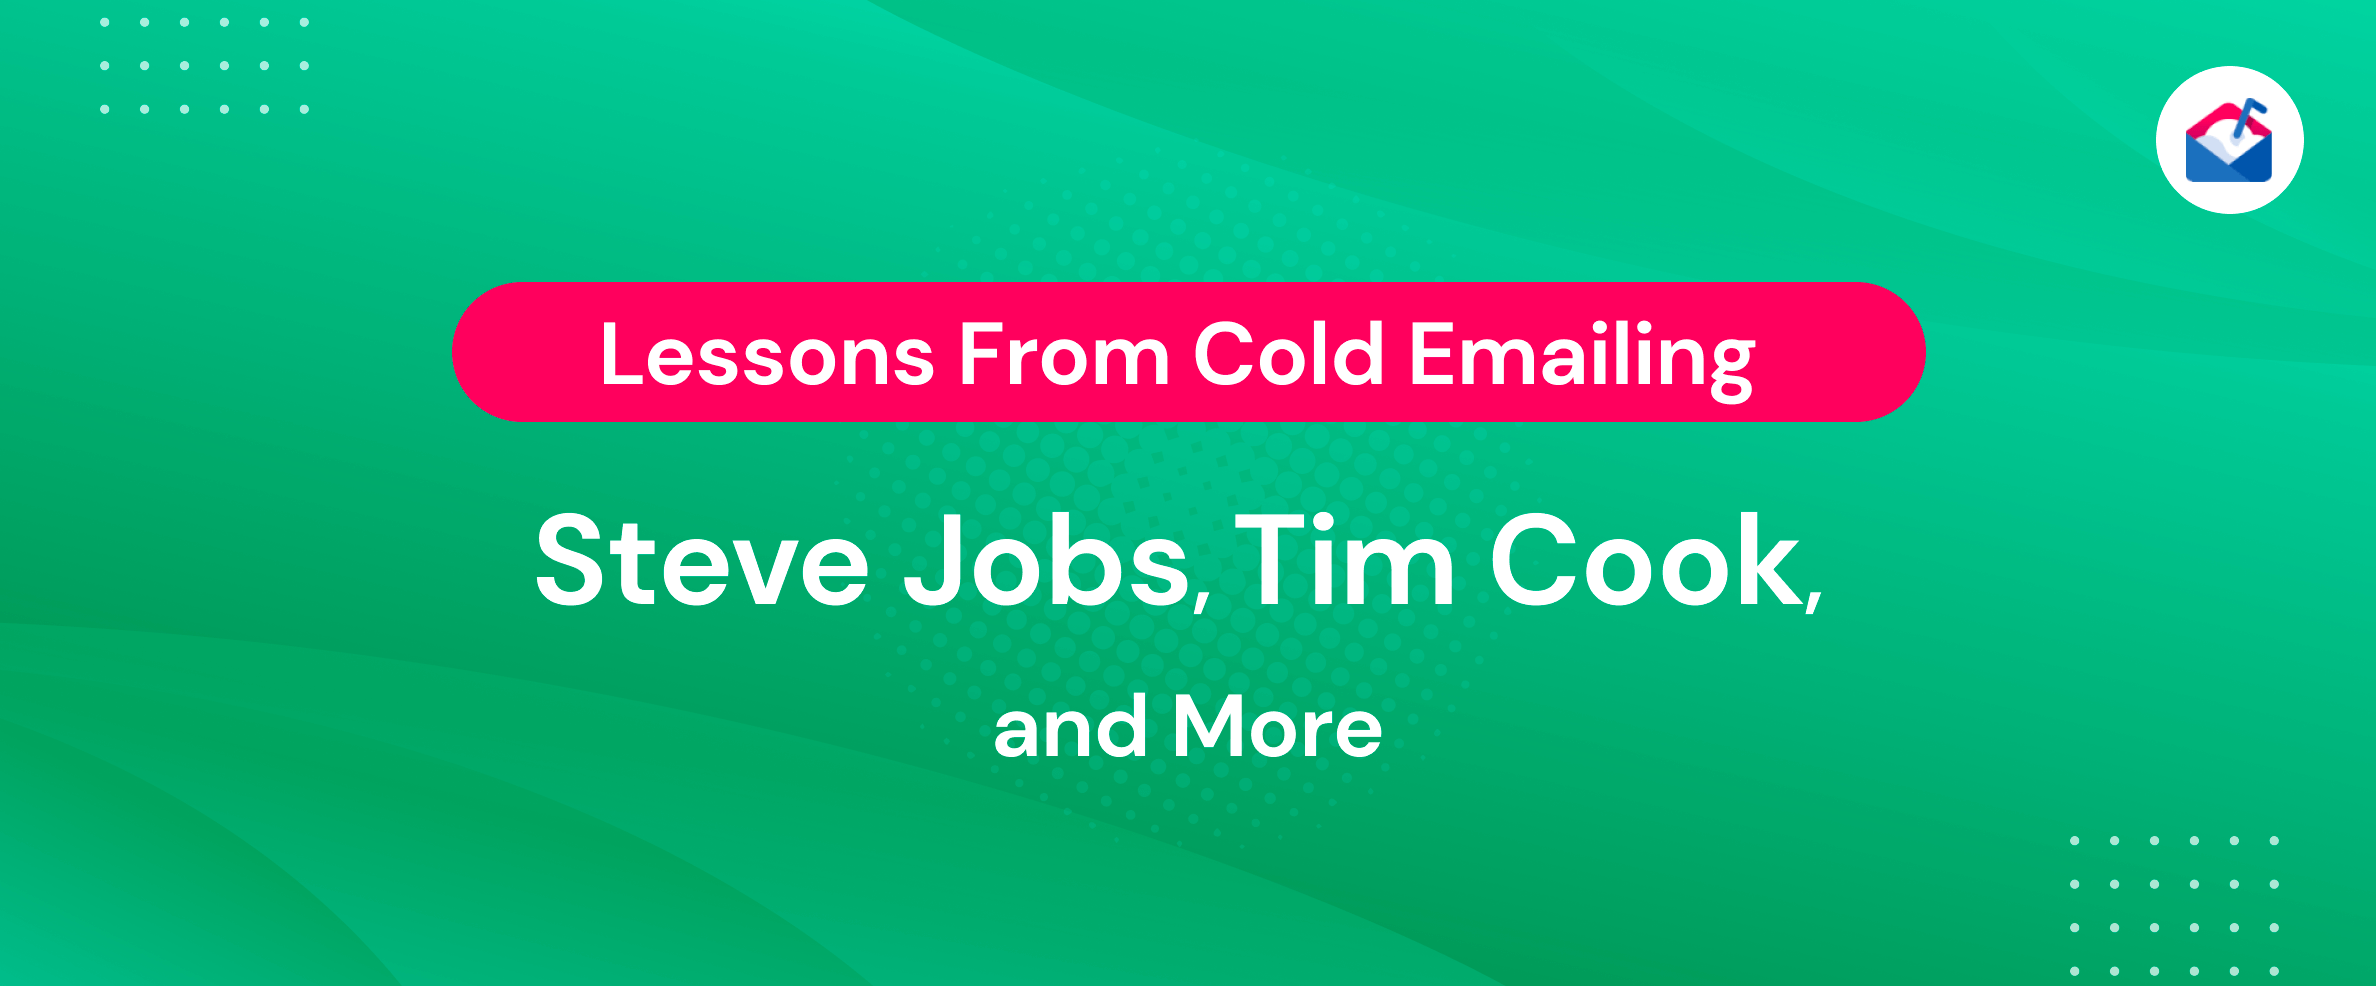 冷電子郵件史蒂夫·喬布斯、蒂姆·庫克等人的經驗教訓